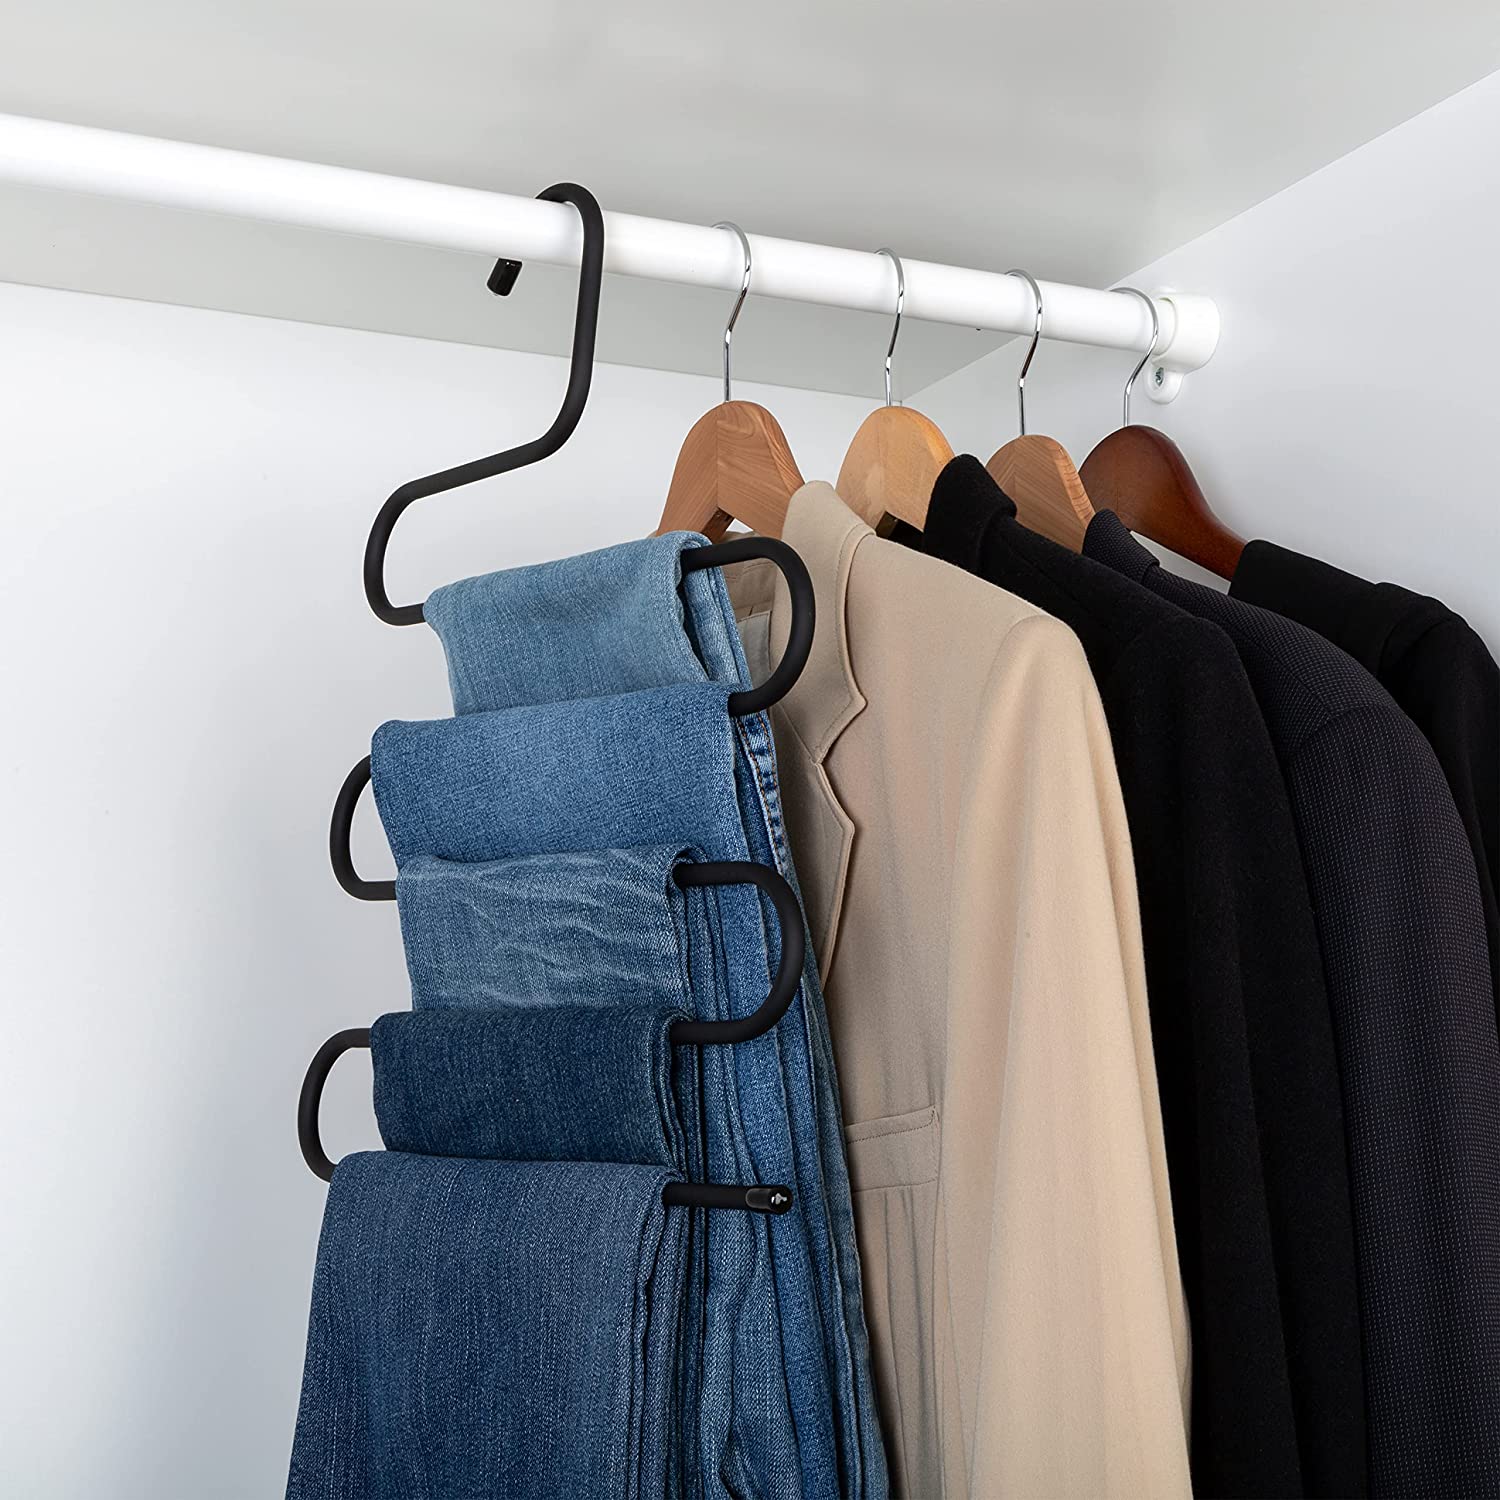 Multi-Tier Pant Hangers - Smart Design® 2